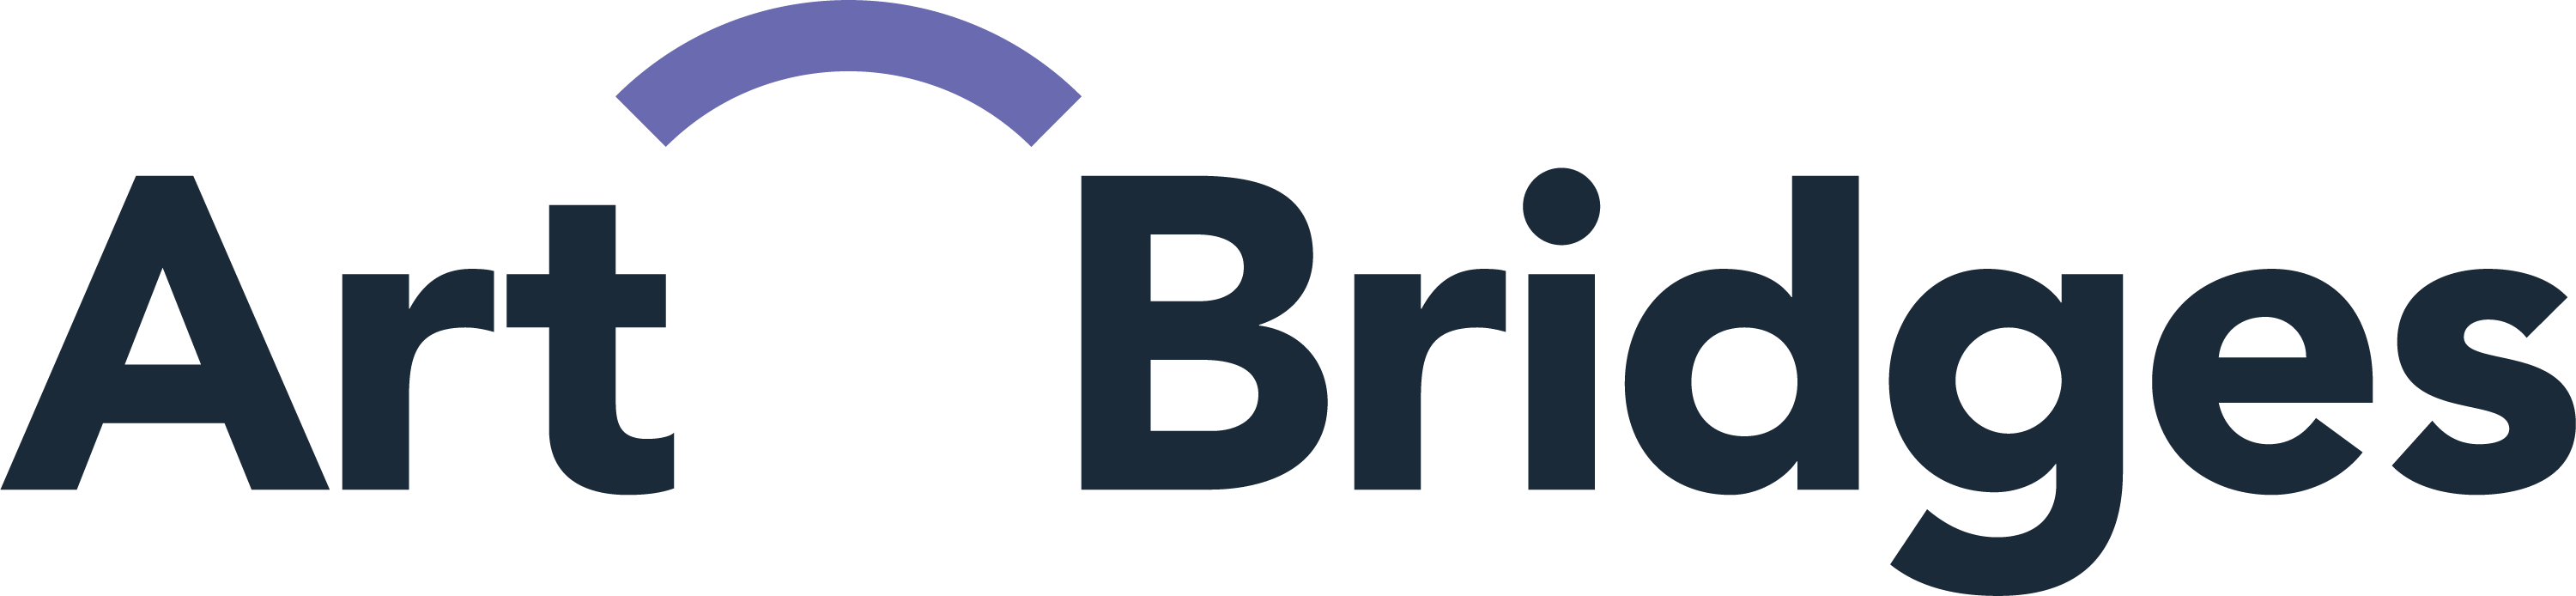 Artbridges logo color